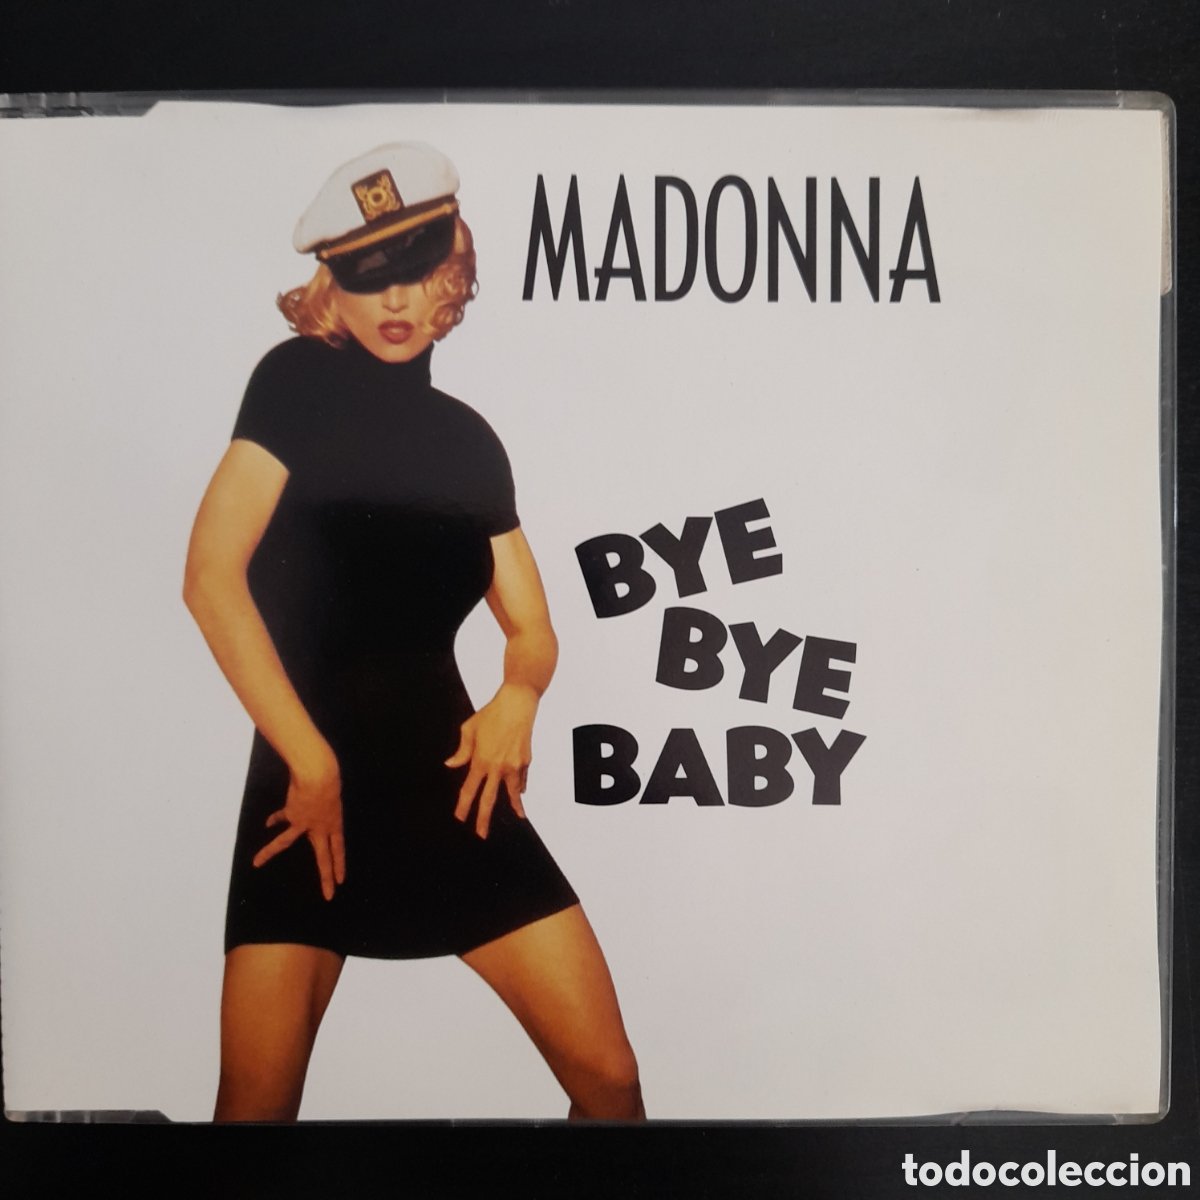 Madonna  Compra venta y subastas en todocoleccion